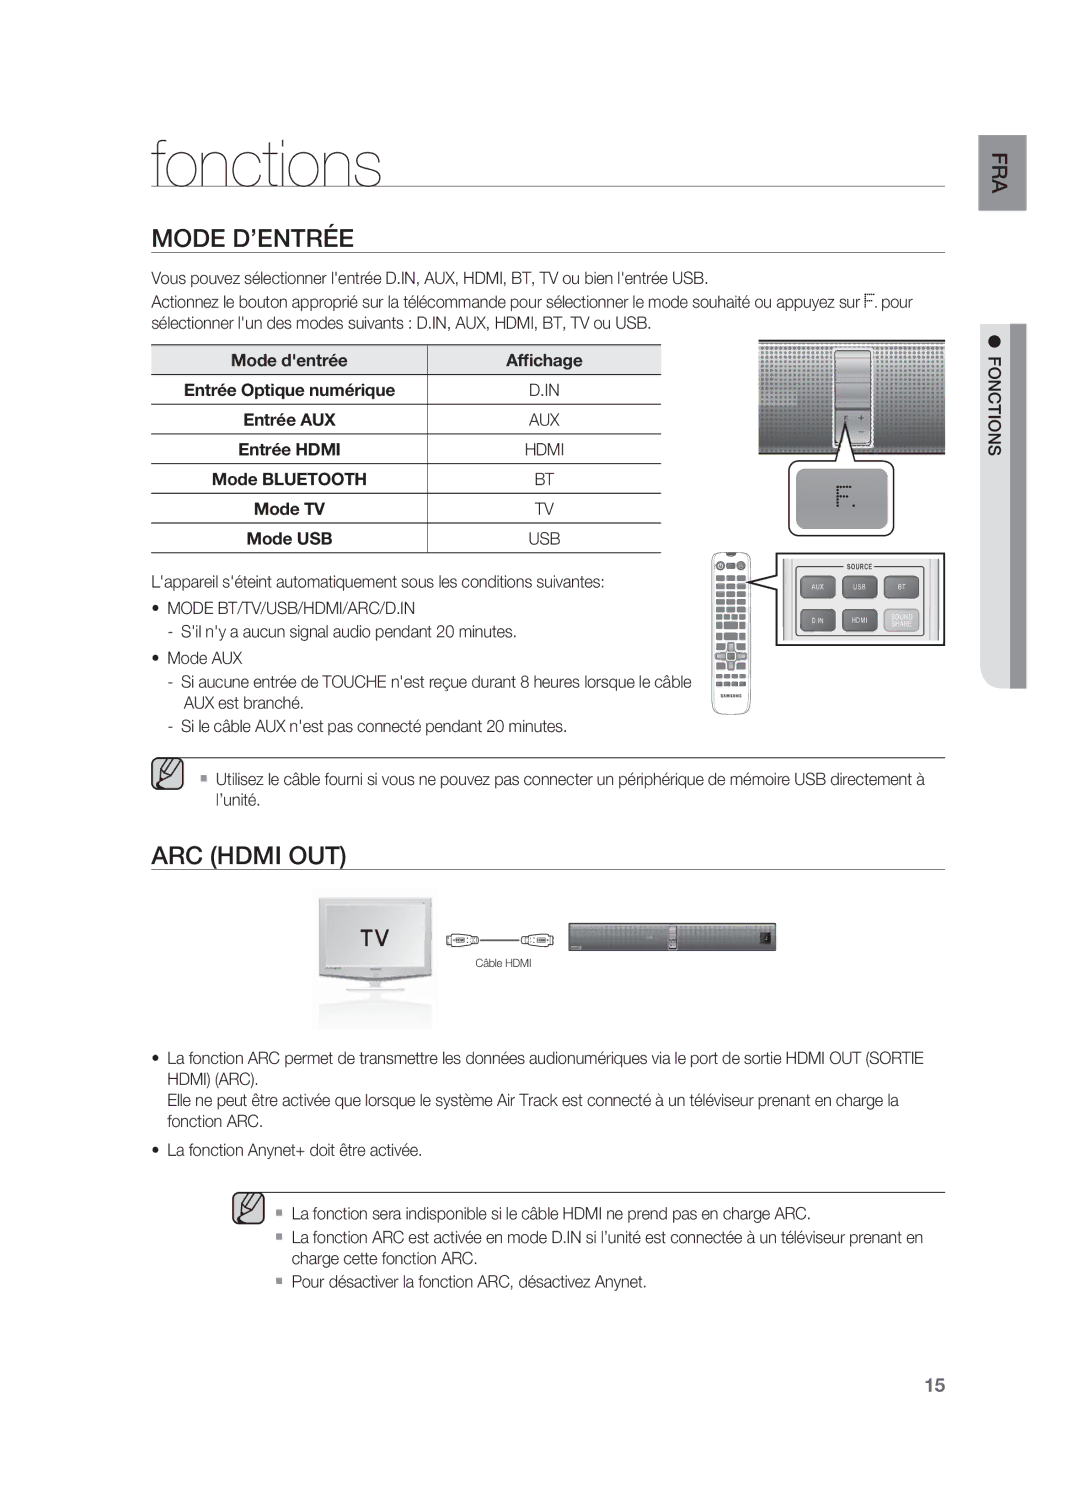 Samsung HW-F850/ZF manual Fonctions, Mode D’ENTRÉE, ARC Hdmi OUT 